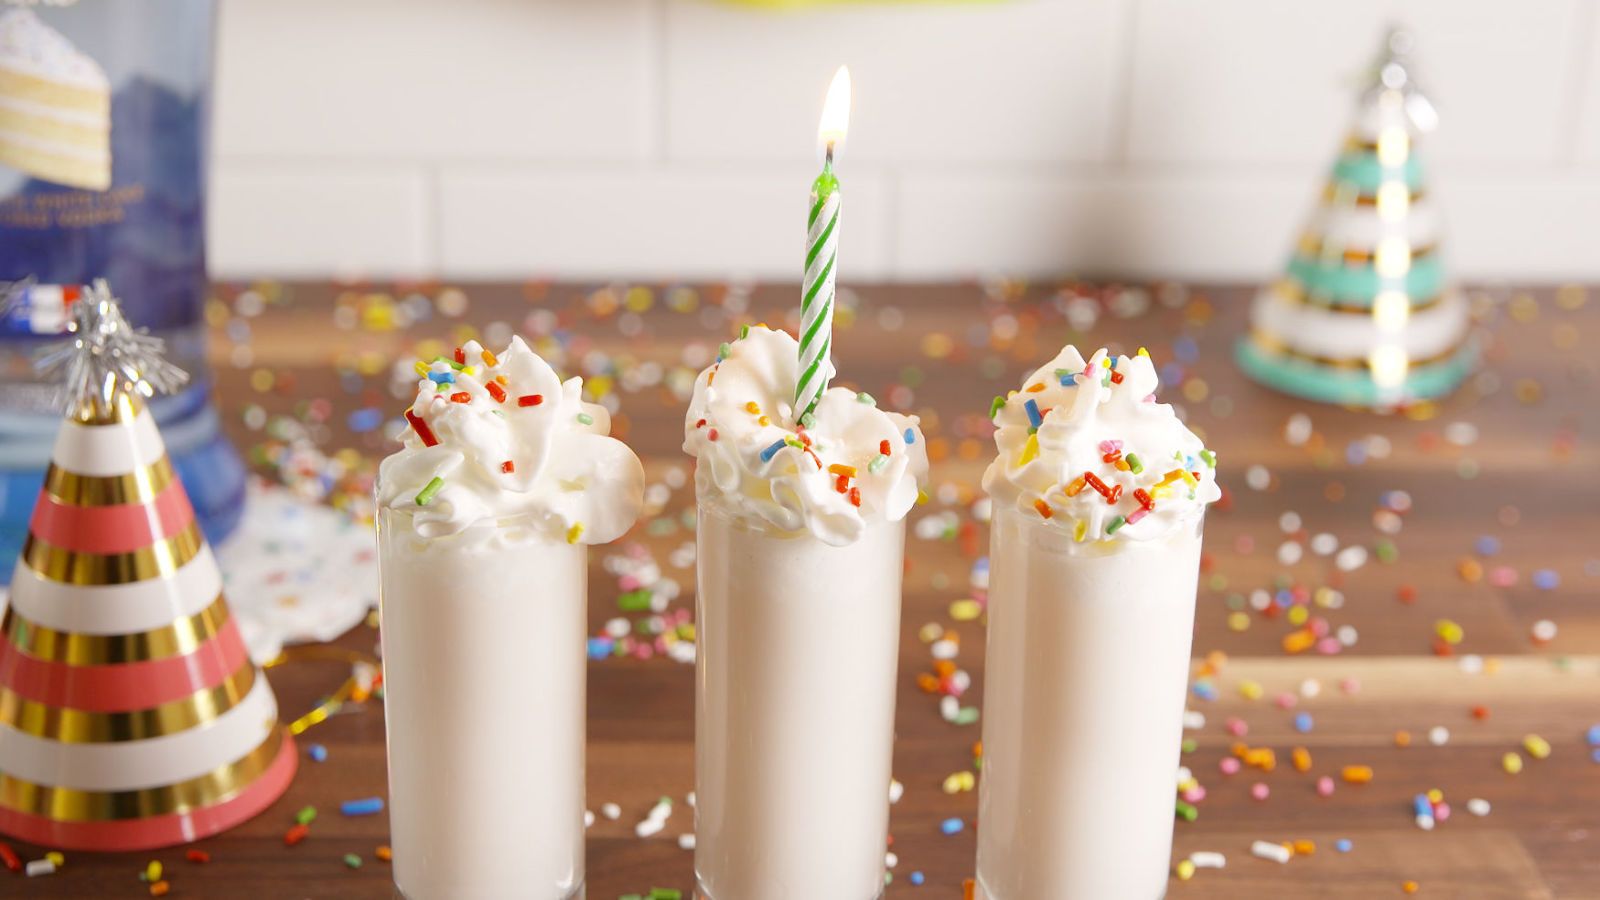 Best Birthday Cake Shots - How to Make Birthday Cake Shots